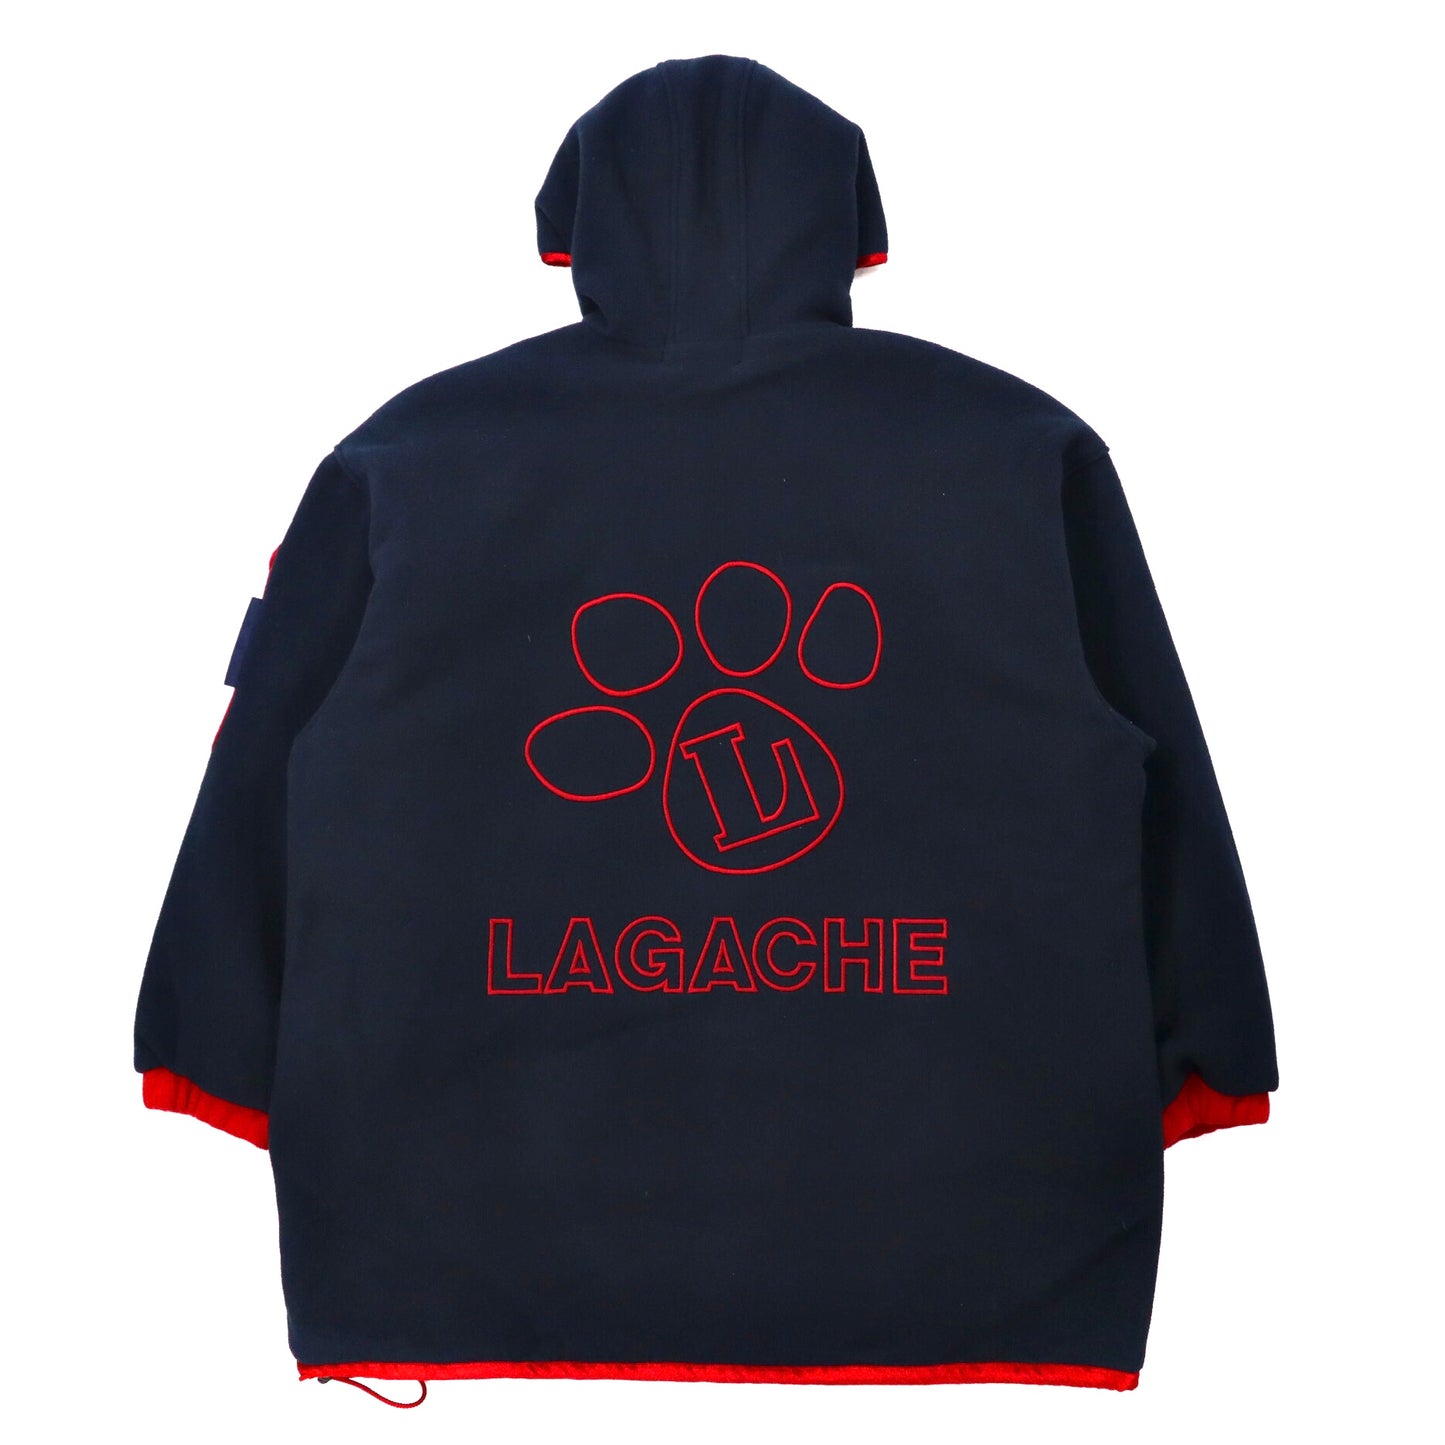 LAGACHE ビッグサイズ フリースパーカー 50 ネイビー ポリエステル バックロゴ刺繍 犬ワッペン 80年代 日本製